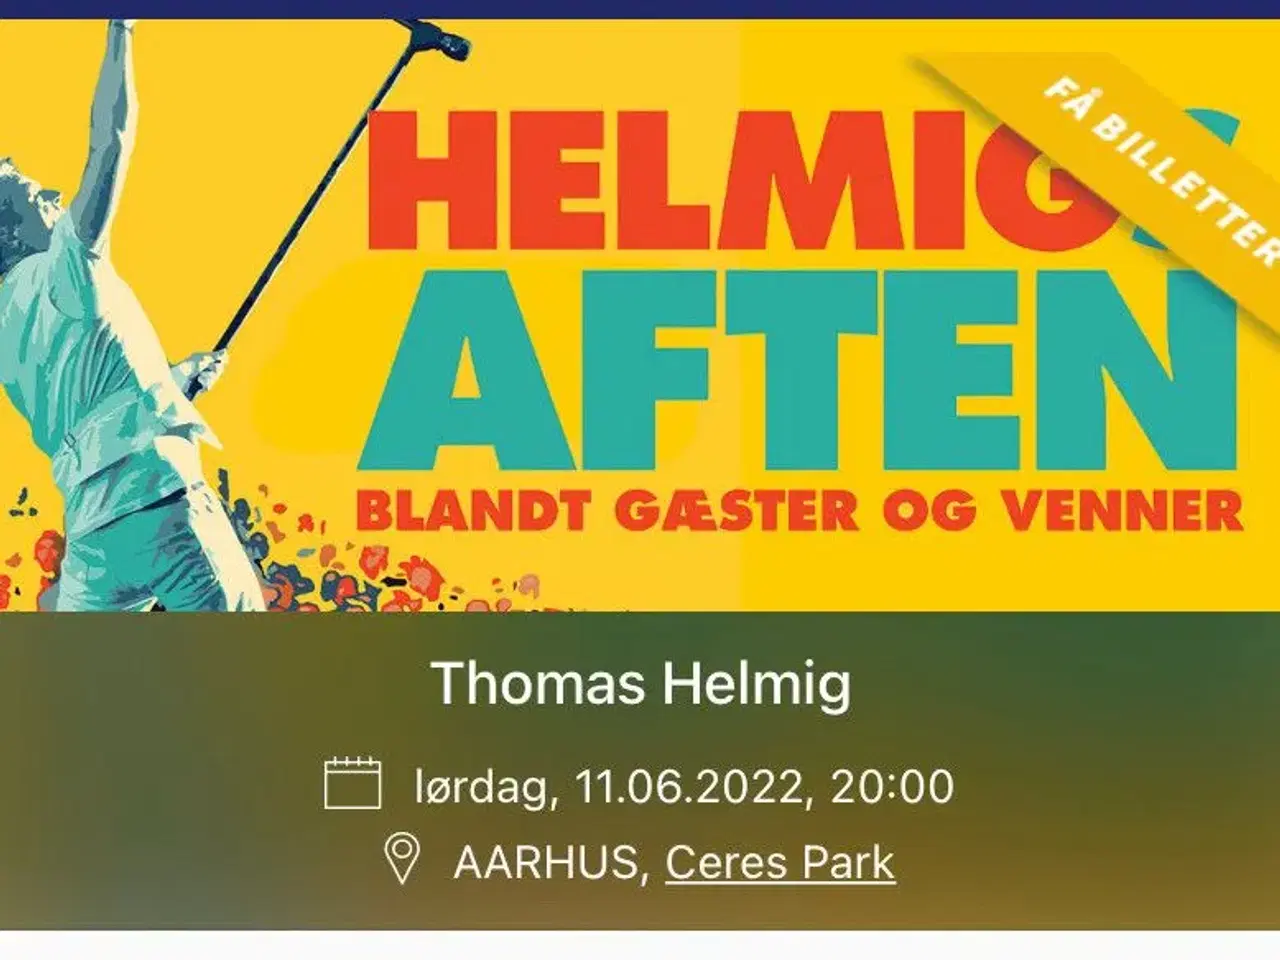 Billede 1 - Thomas Helmig koncertbillet 11 juni i Århus 